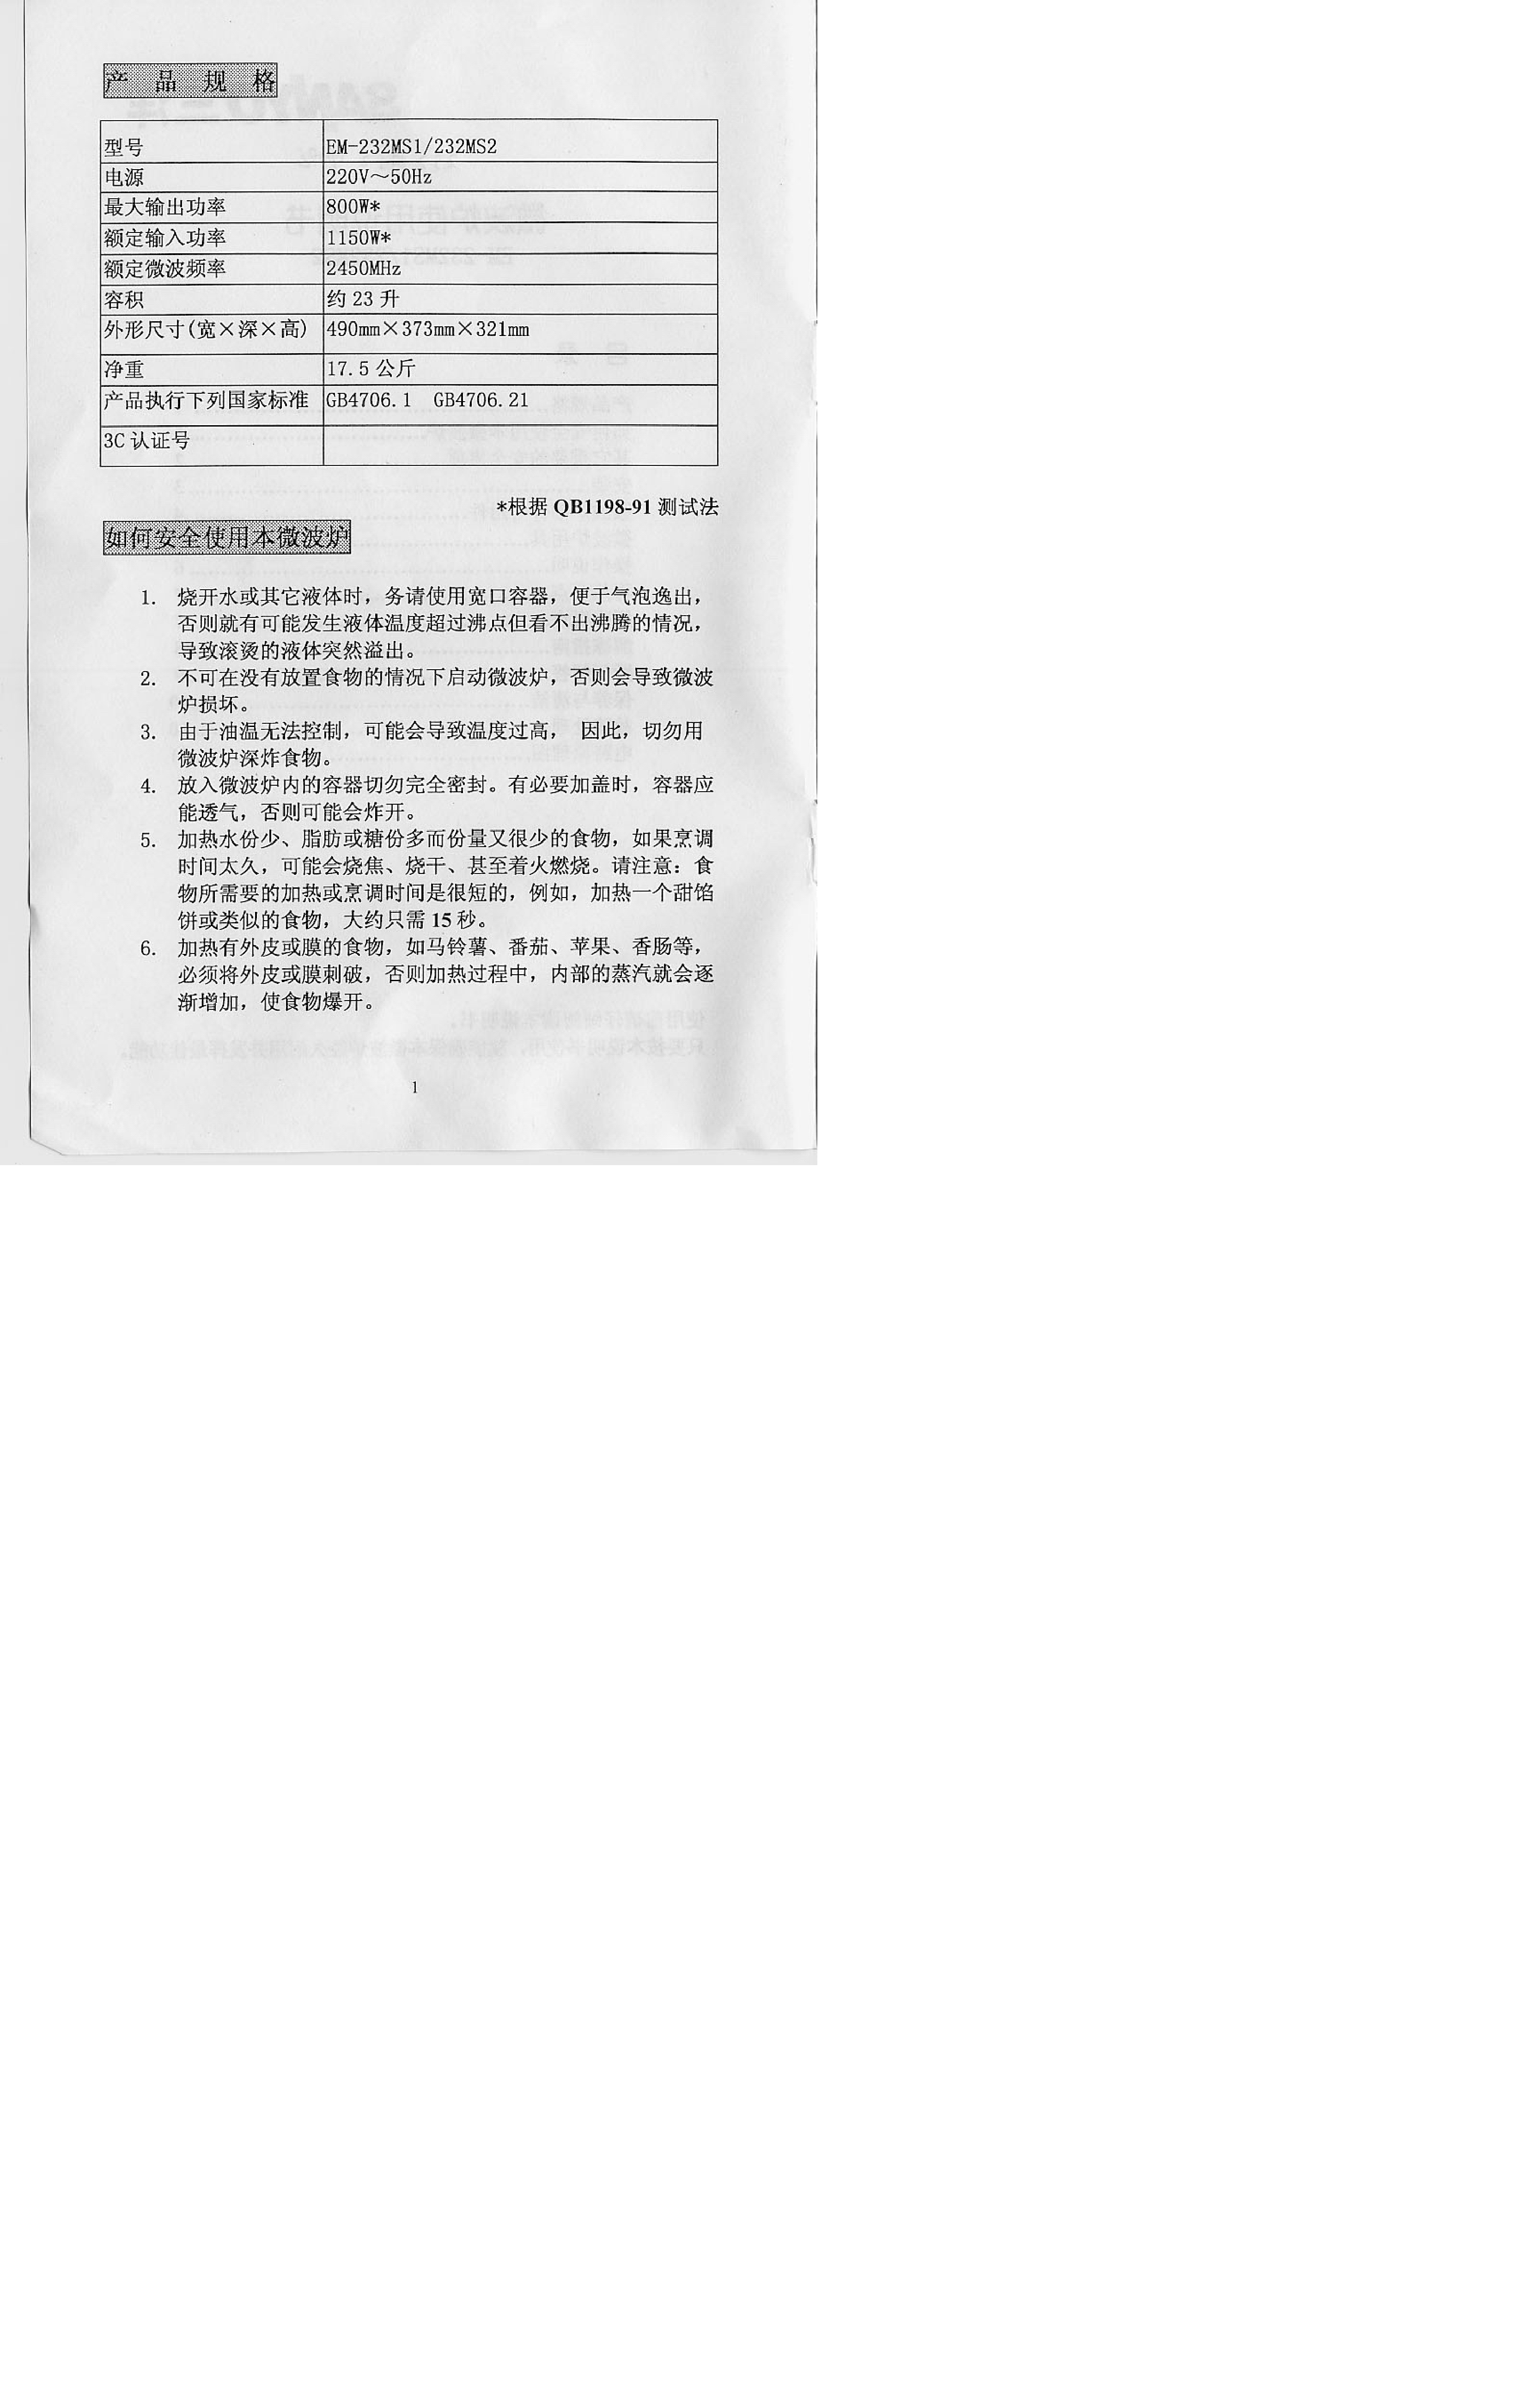 三洋 Sanyo EM-232MS1 说明书 第1页